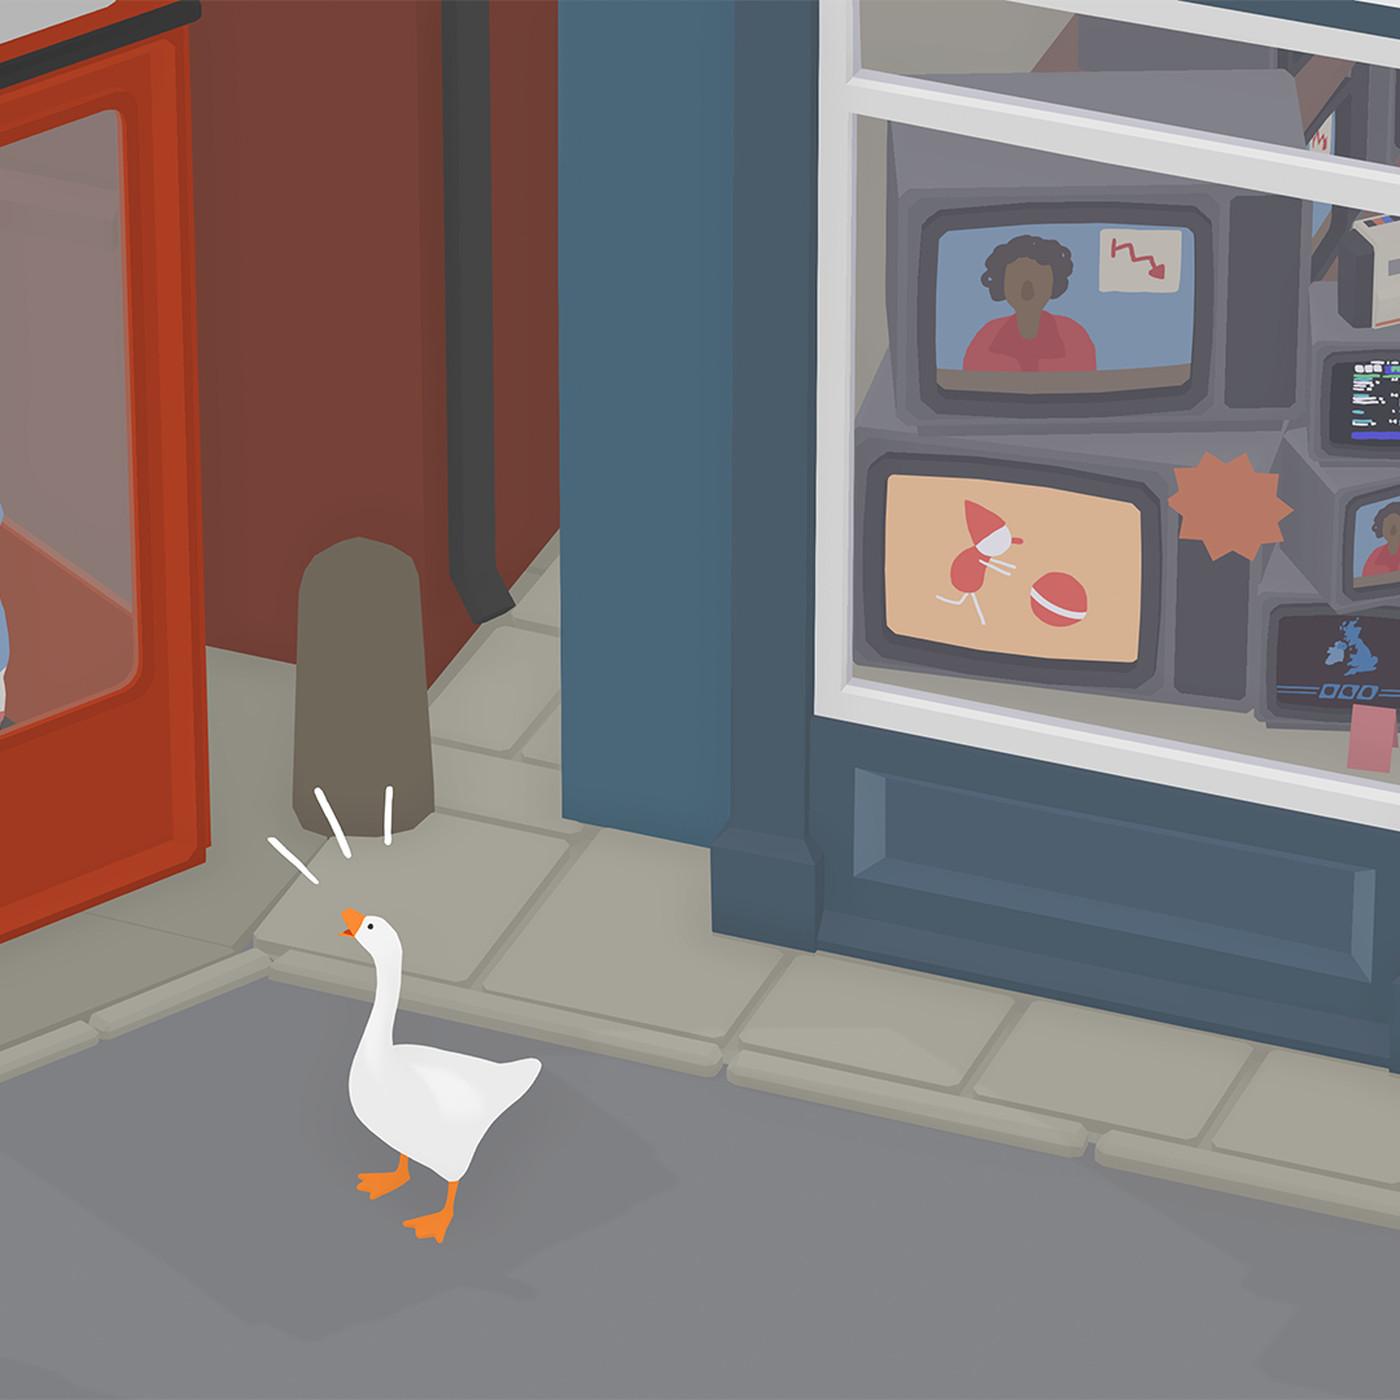 untitled goose game desktop background